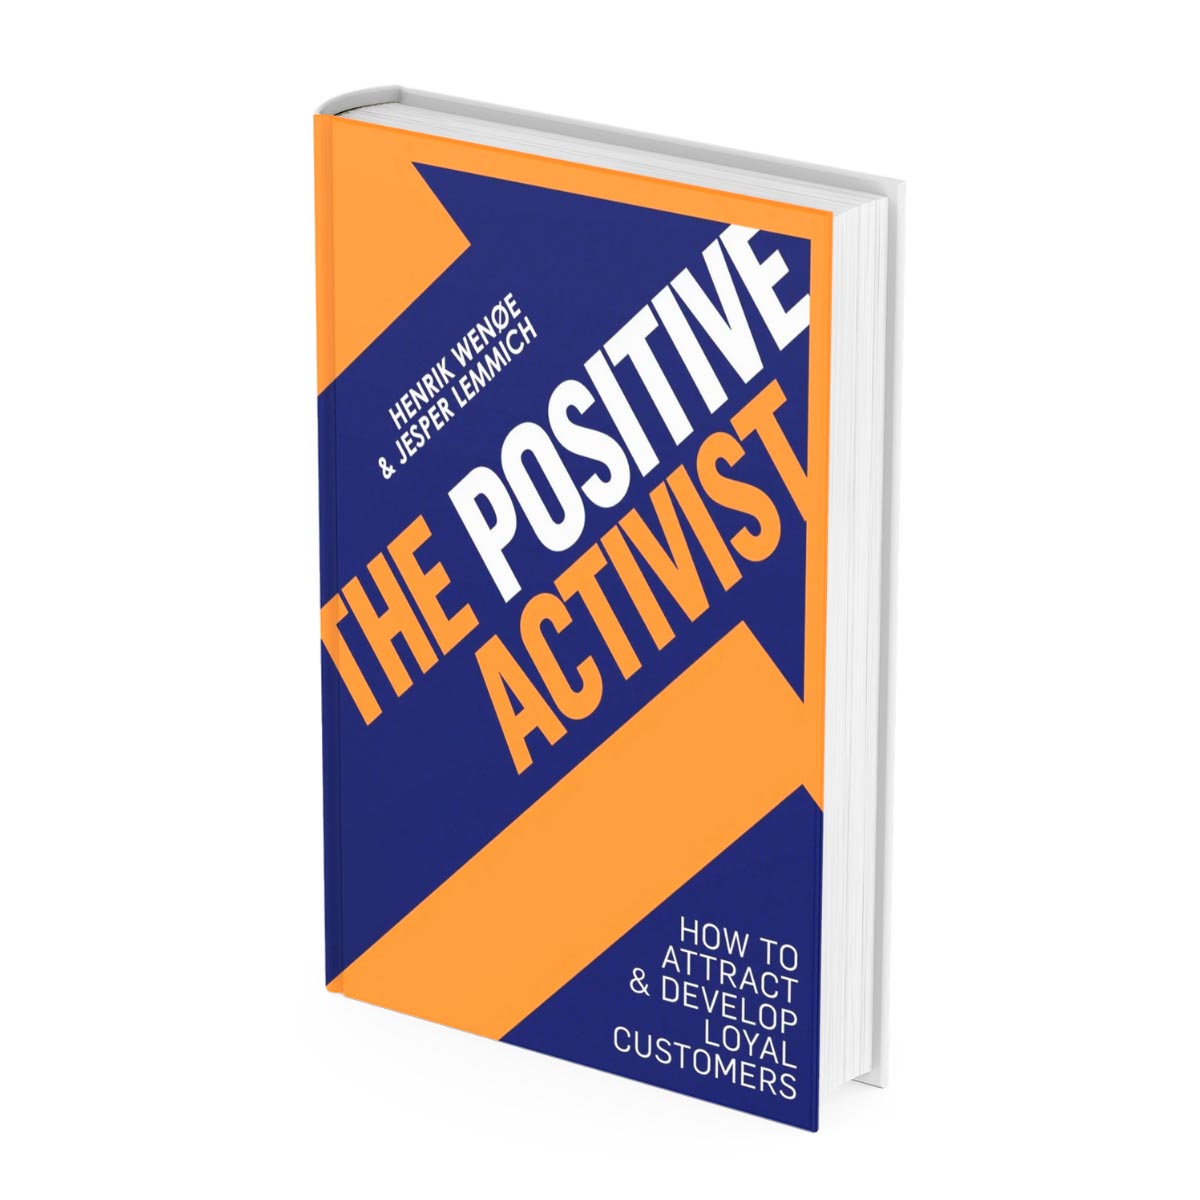 Sales Program, The Positive Activist